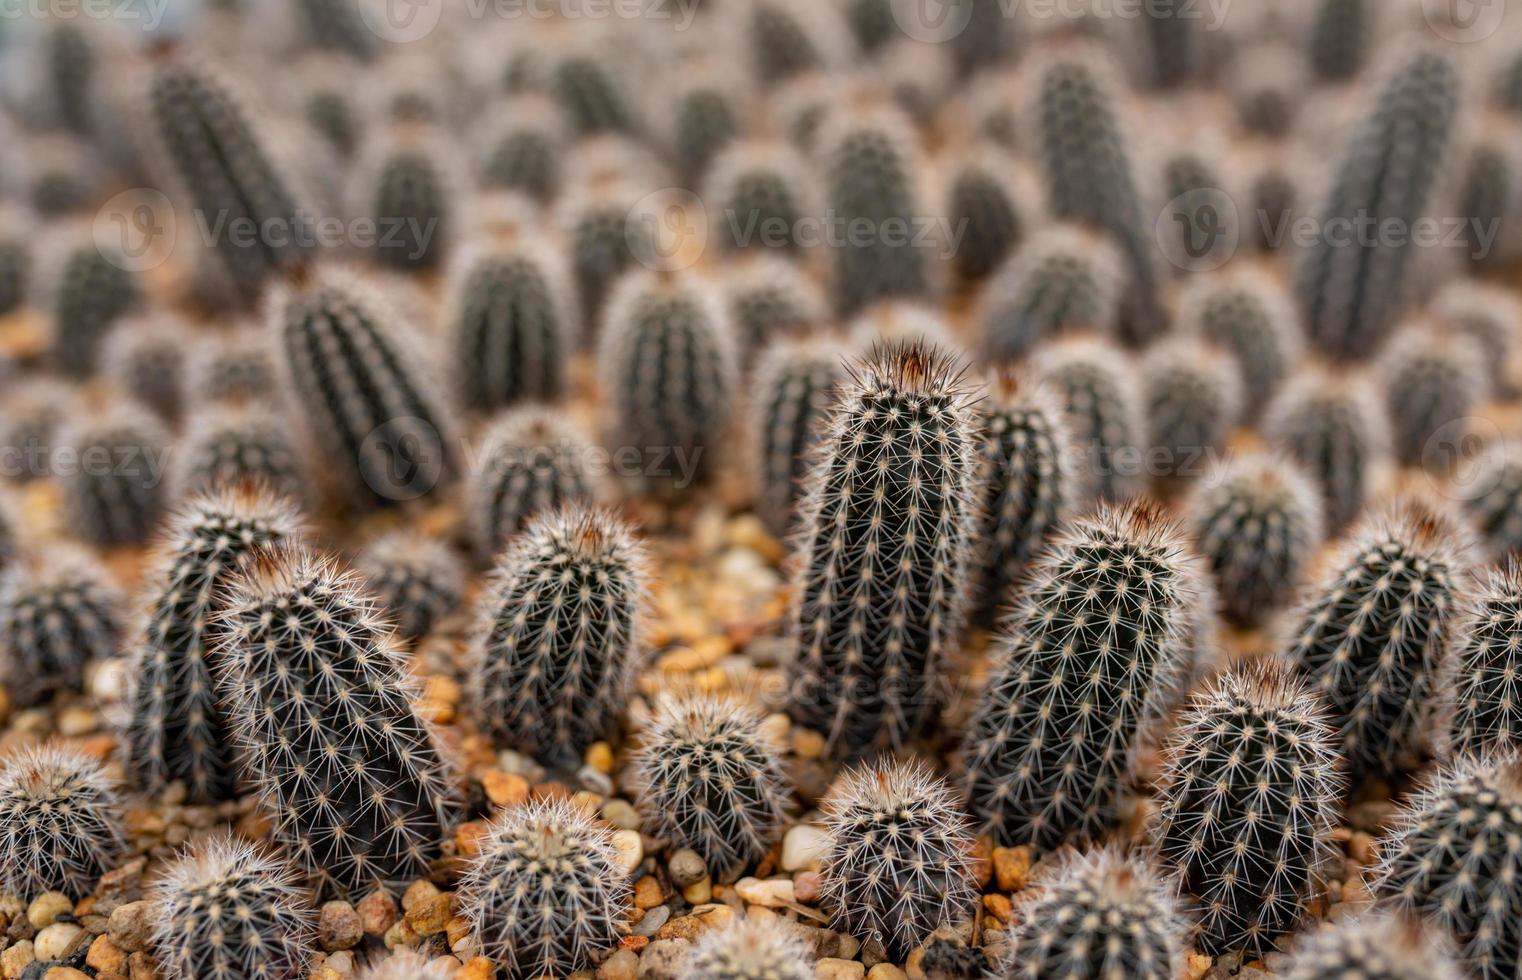 cactus en serre de plantation photo